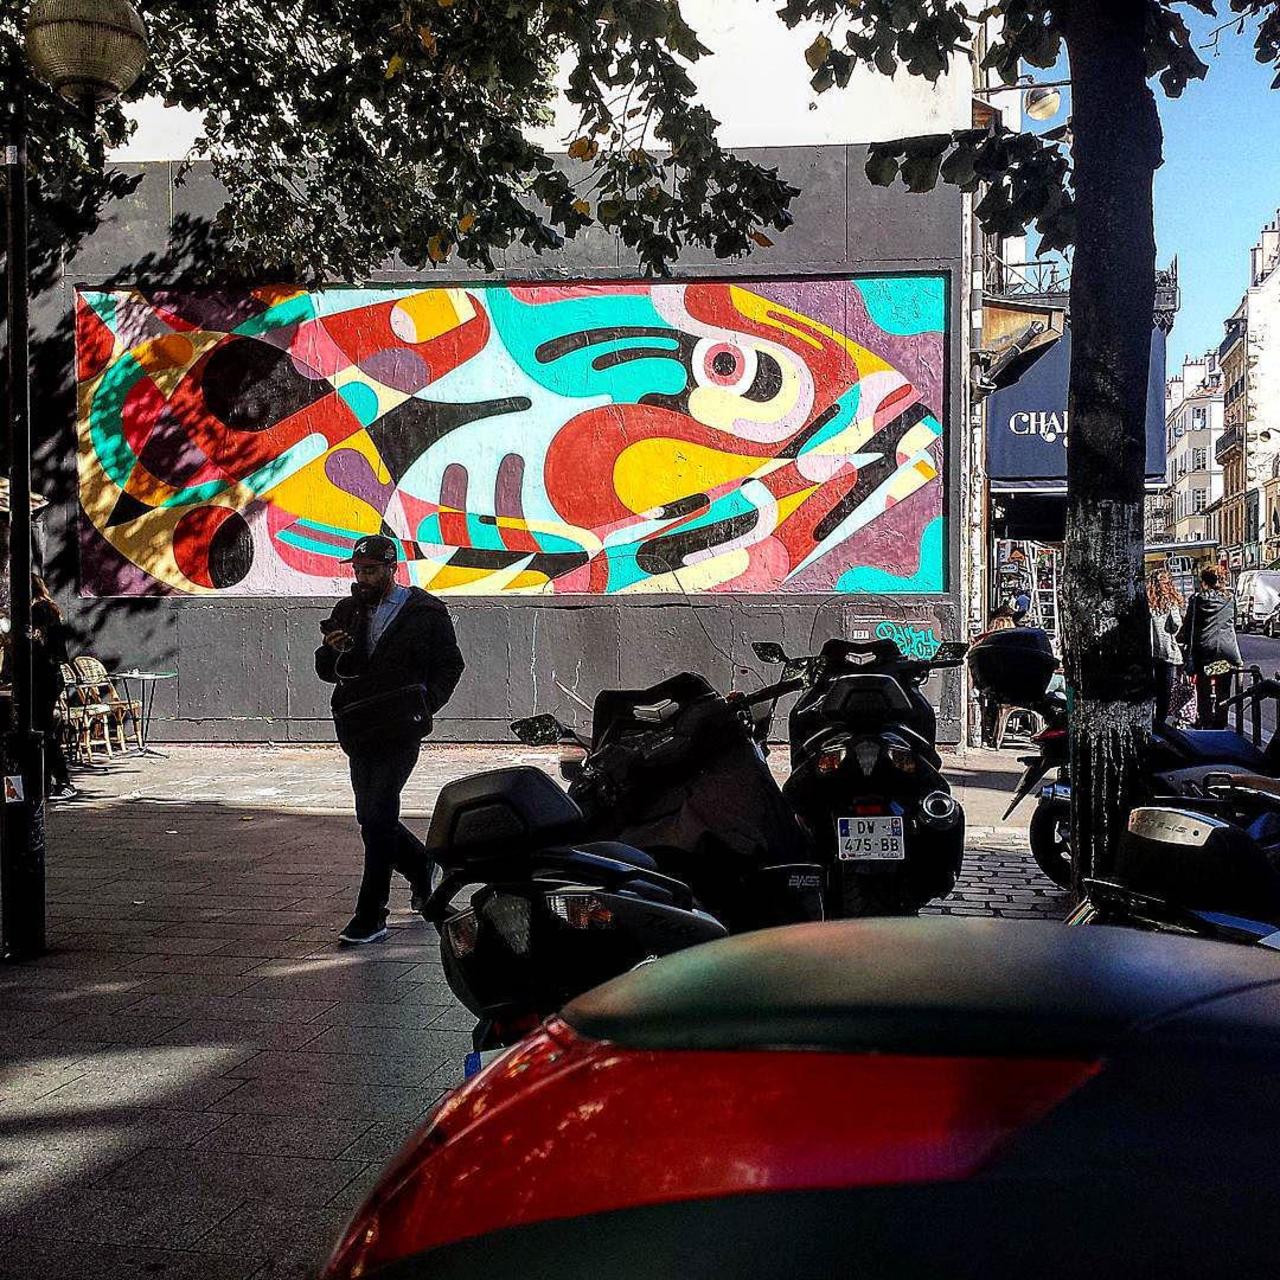 #Paris #graffiti photo by @streetartparischris http://ift.tt/1Fz4bed #StreetArt http://t.co/QcgOspVuPG